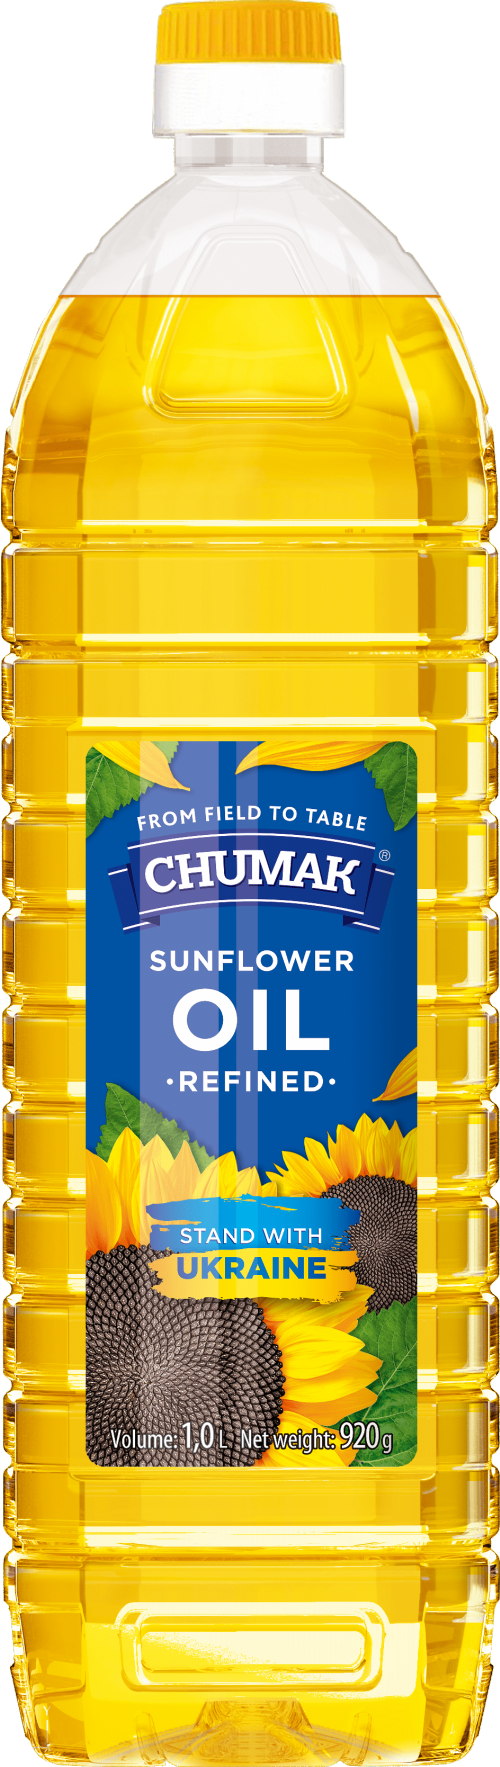 CHUMAK Sunflower Oil 1L